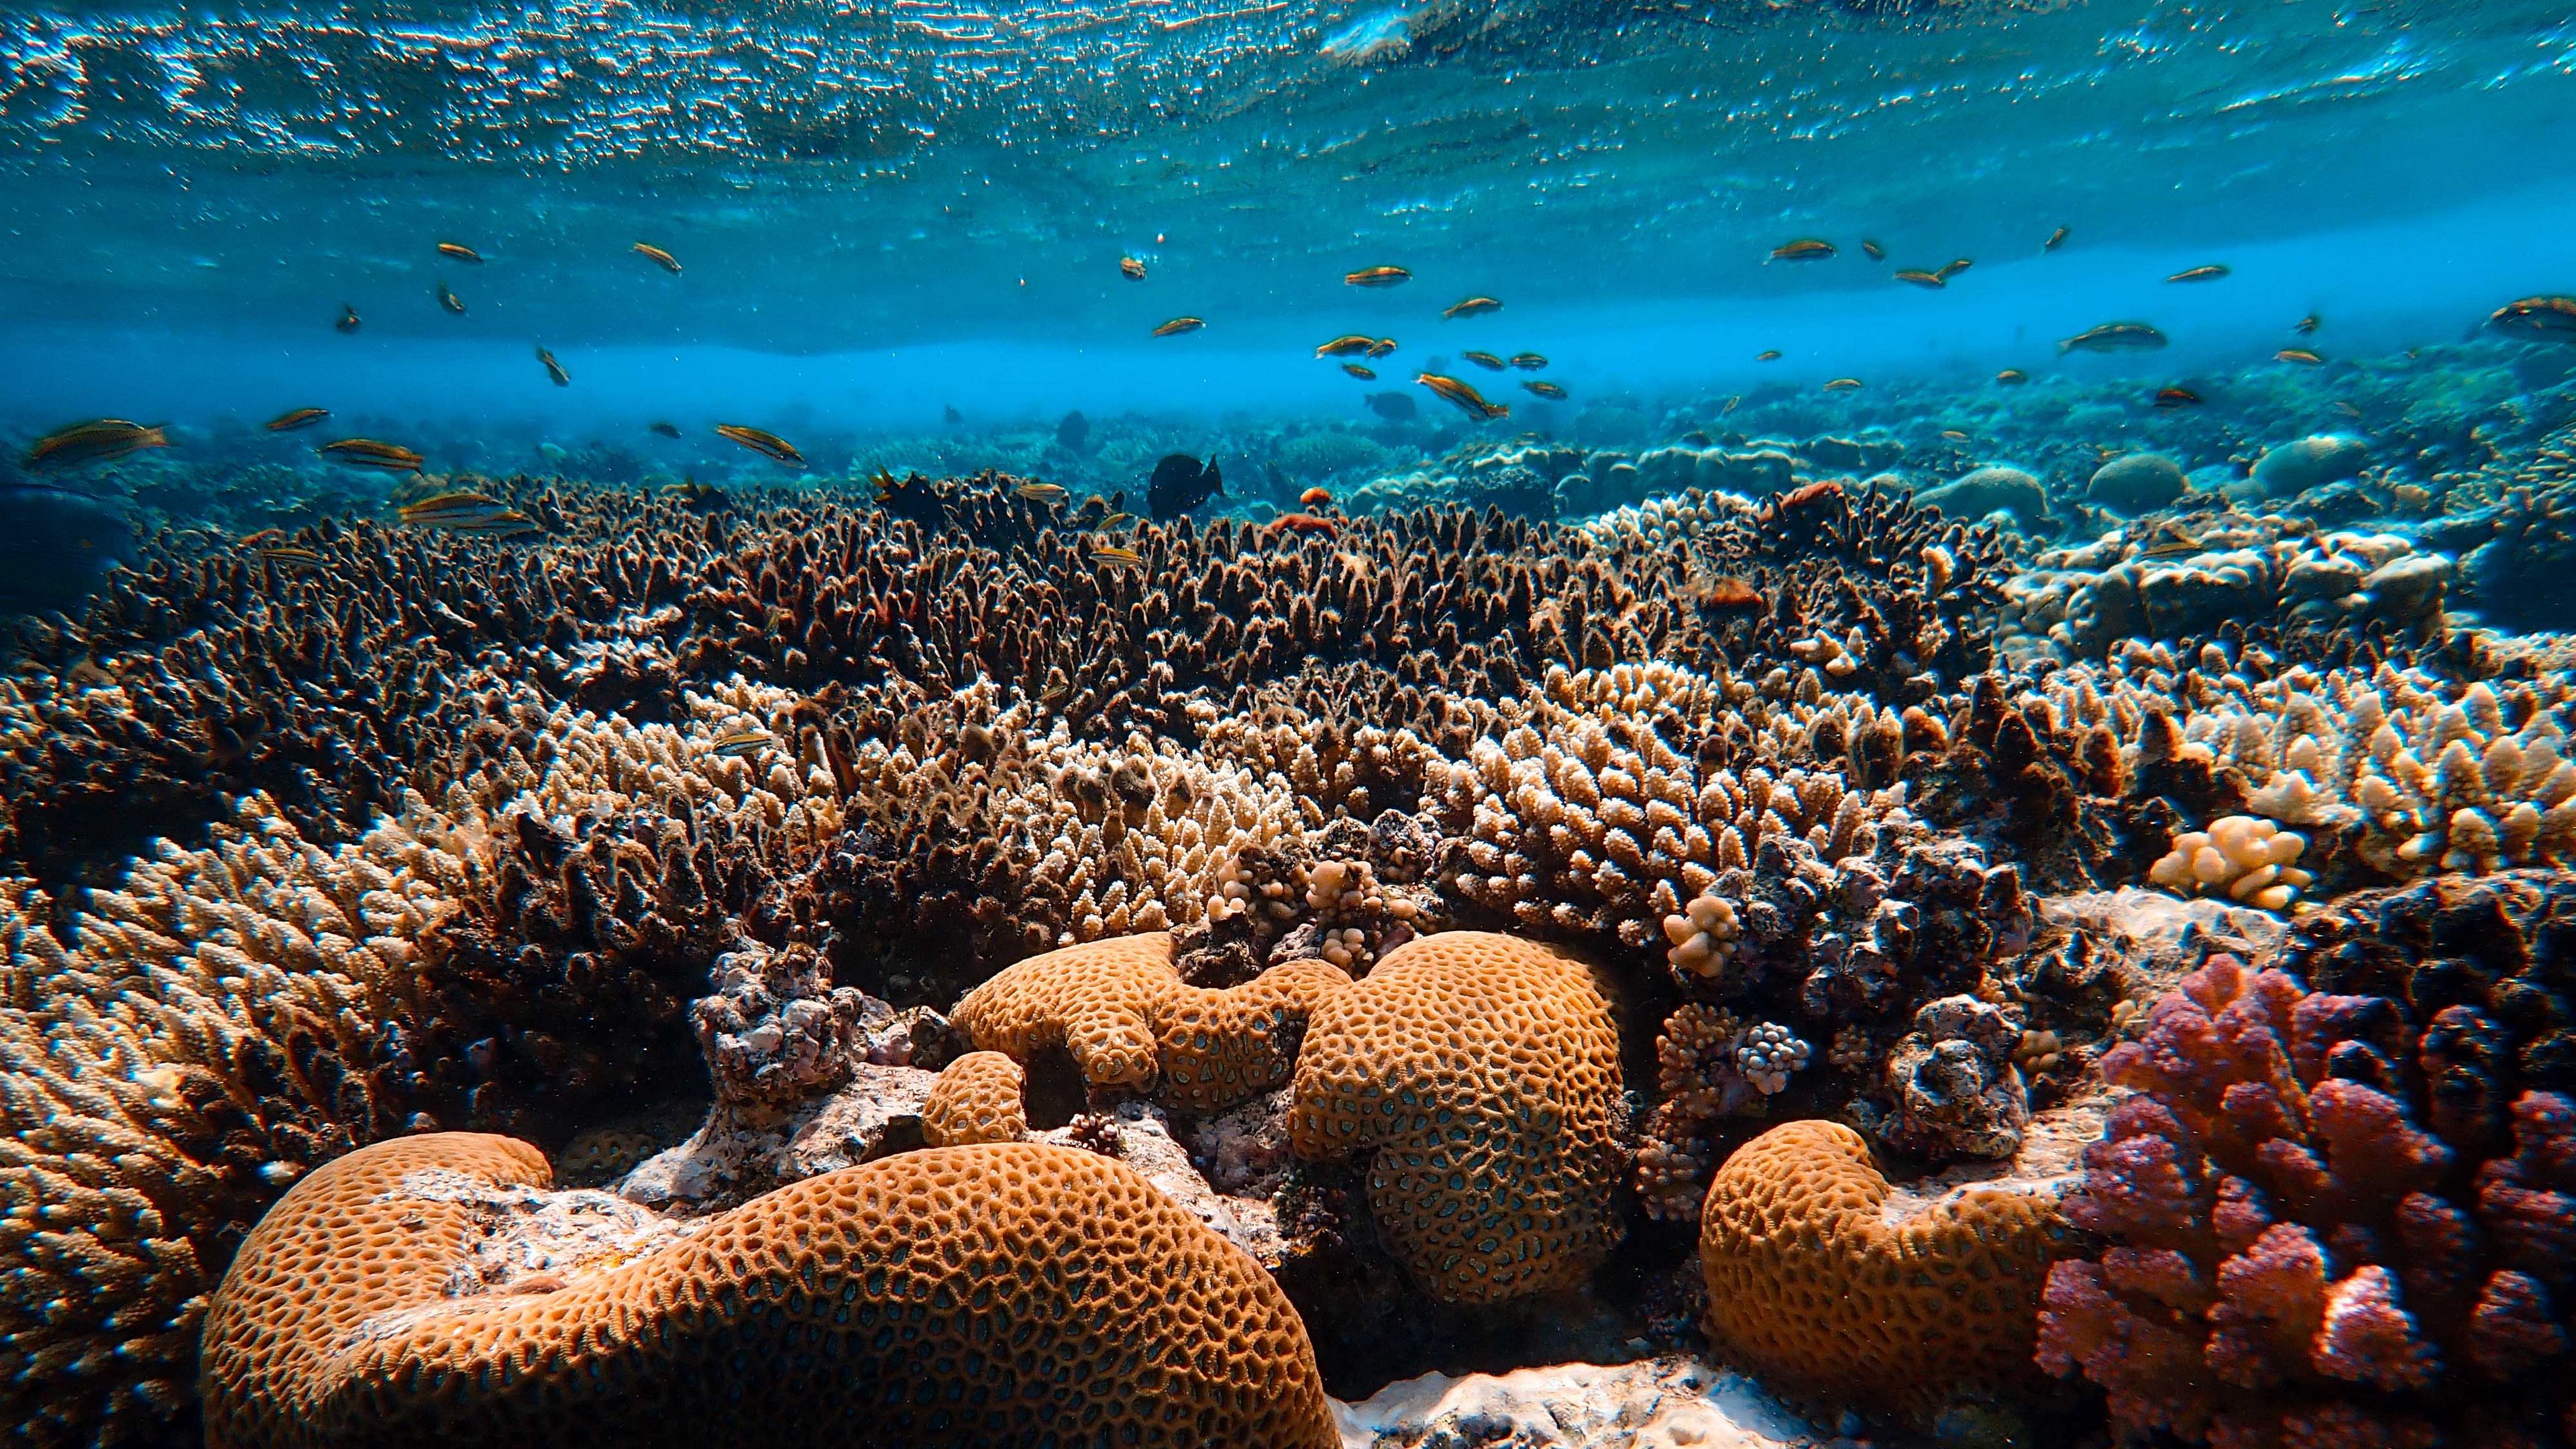 Download wallpaper 3840x2160 corals, algae, underwater world, water 4k uhd  16:9 hd background